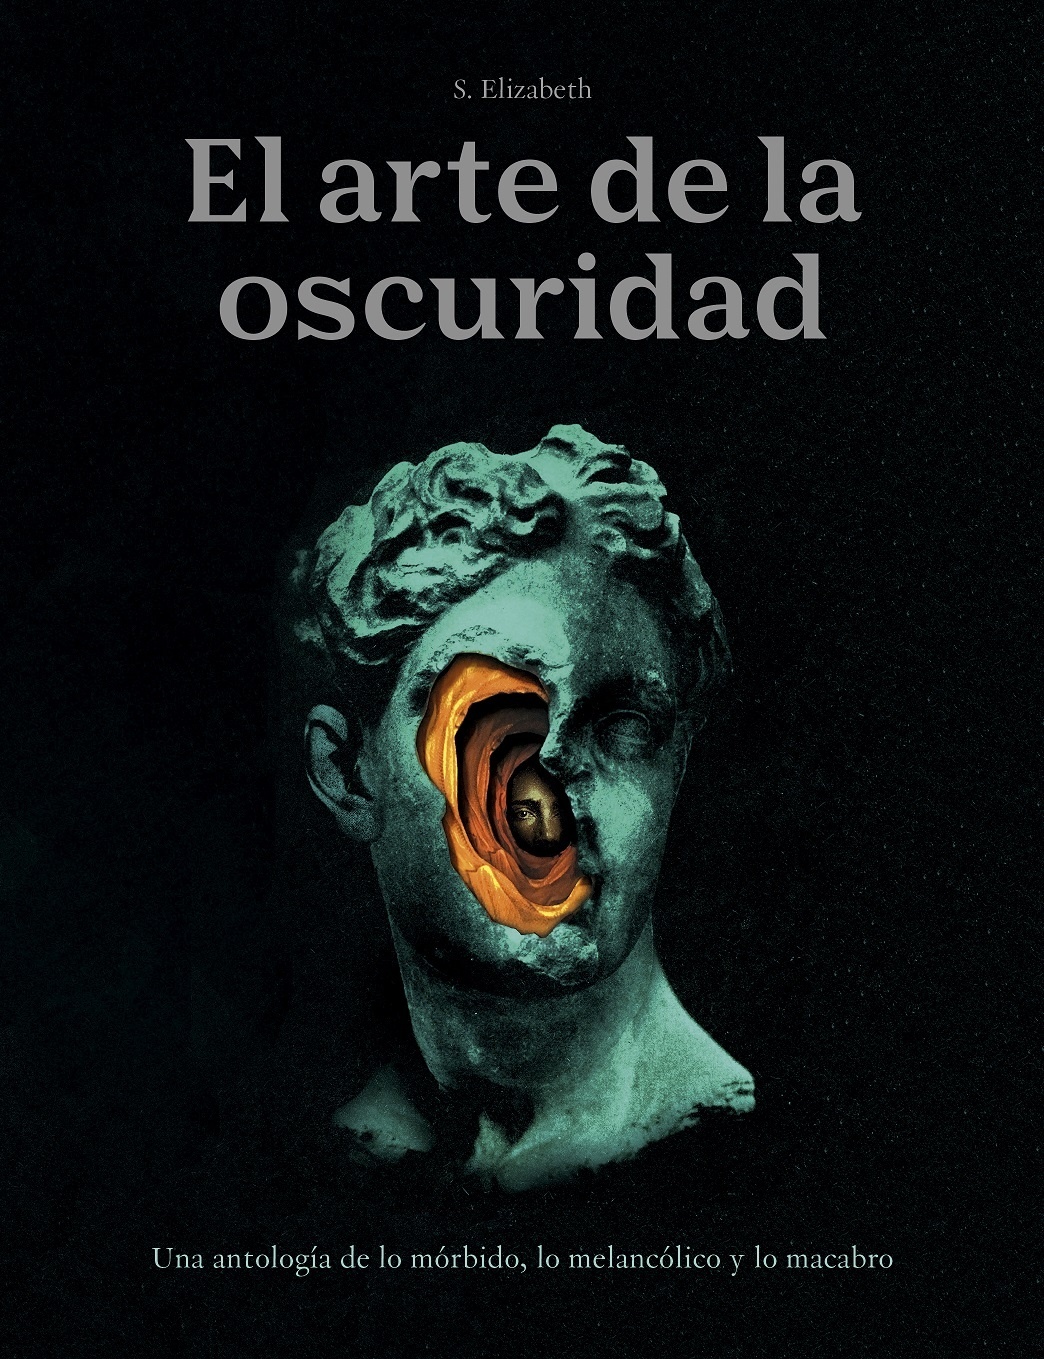 Arte de la oscuridad, El "Una antología de lo mórbido, lo melancólico y lo macabro". 